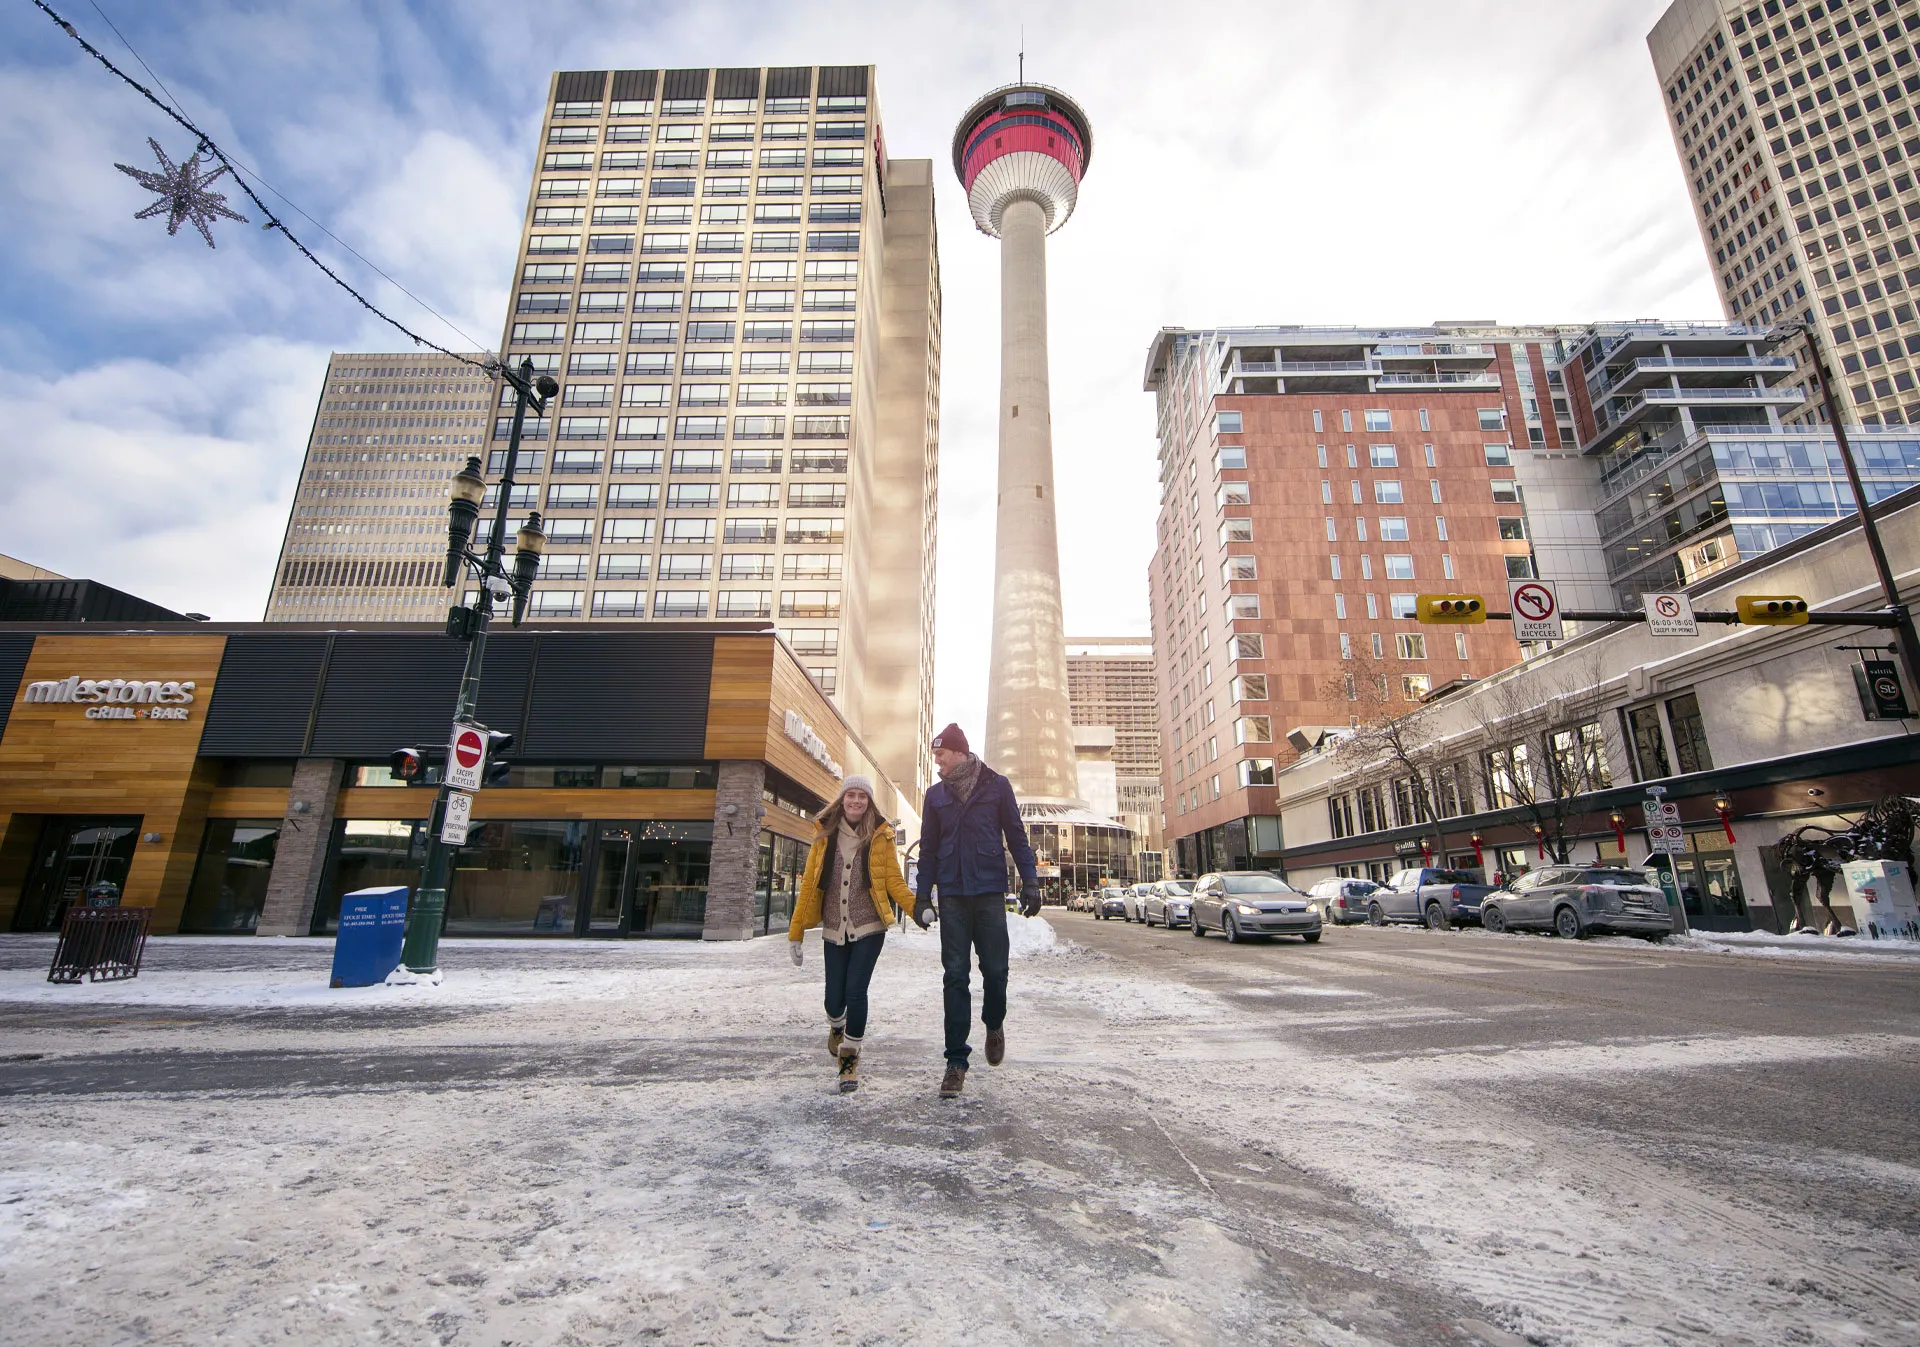 The Calgary Tower (Photo credit: Travel Alberta/Roth & Ramberg).